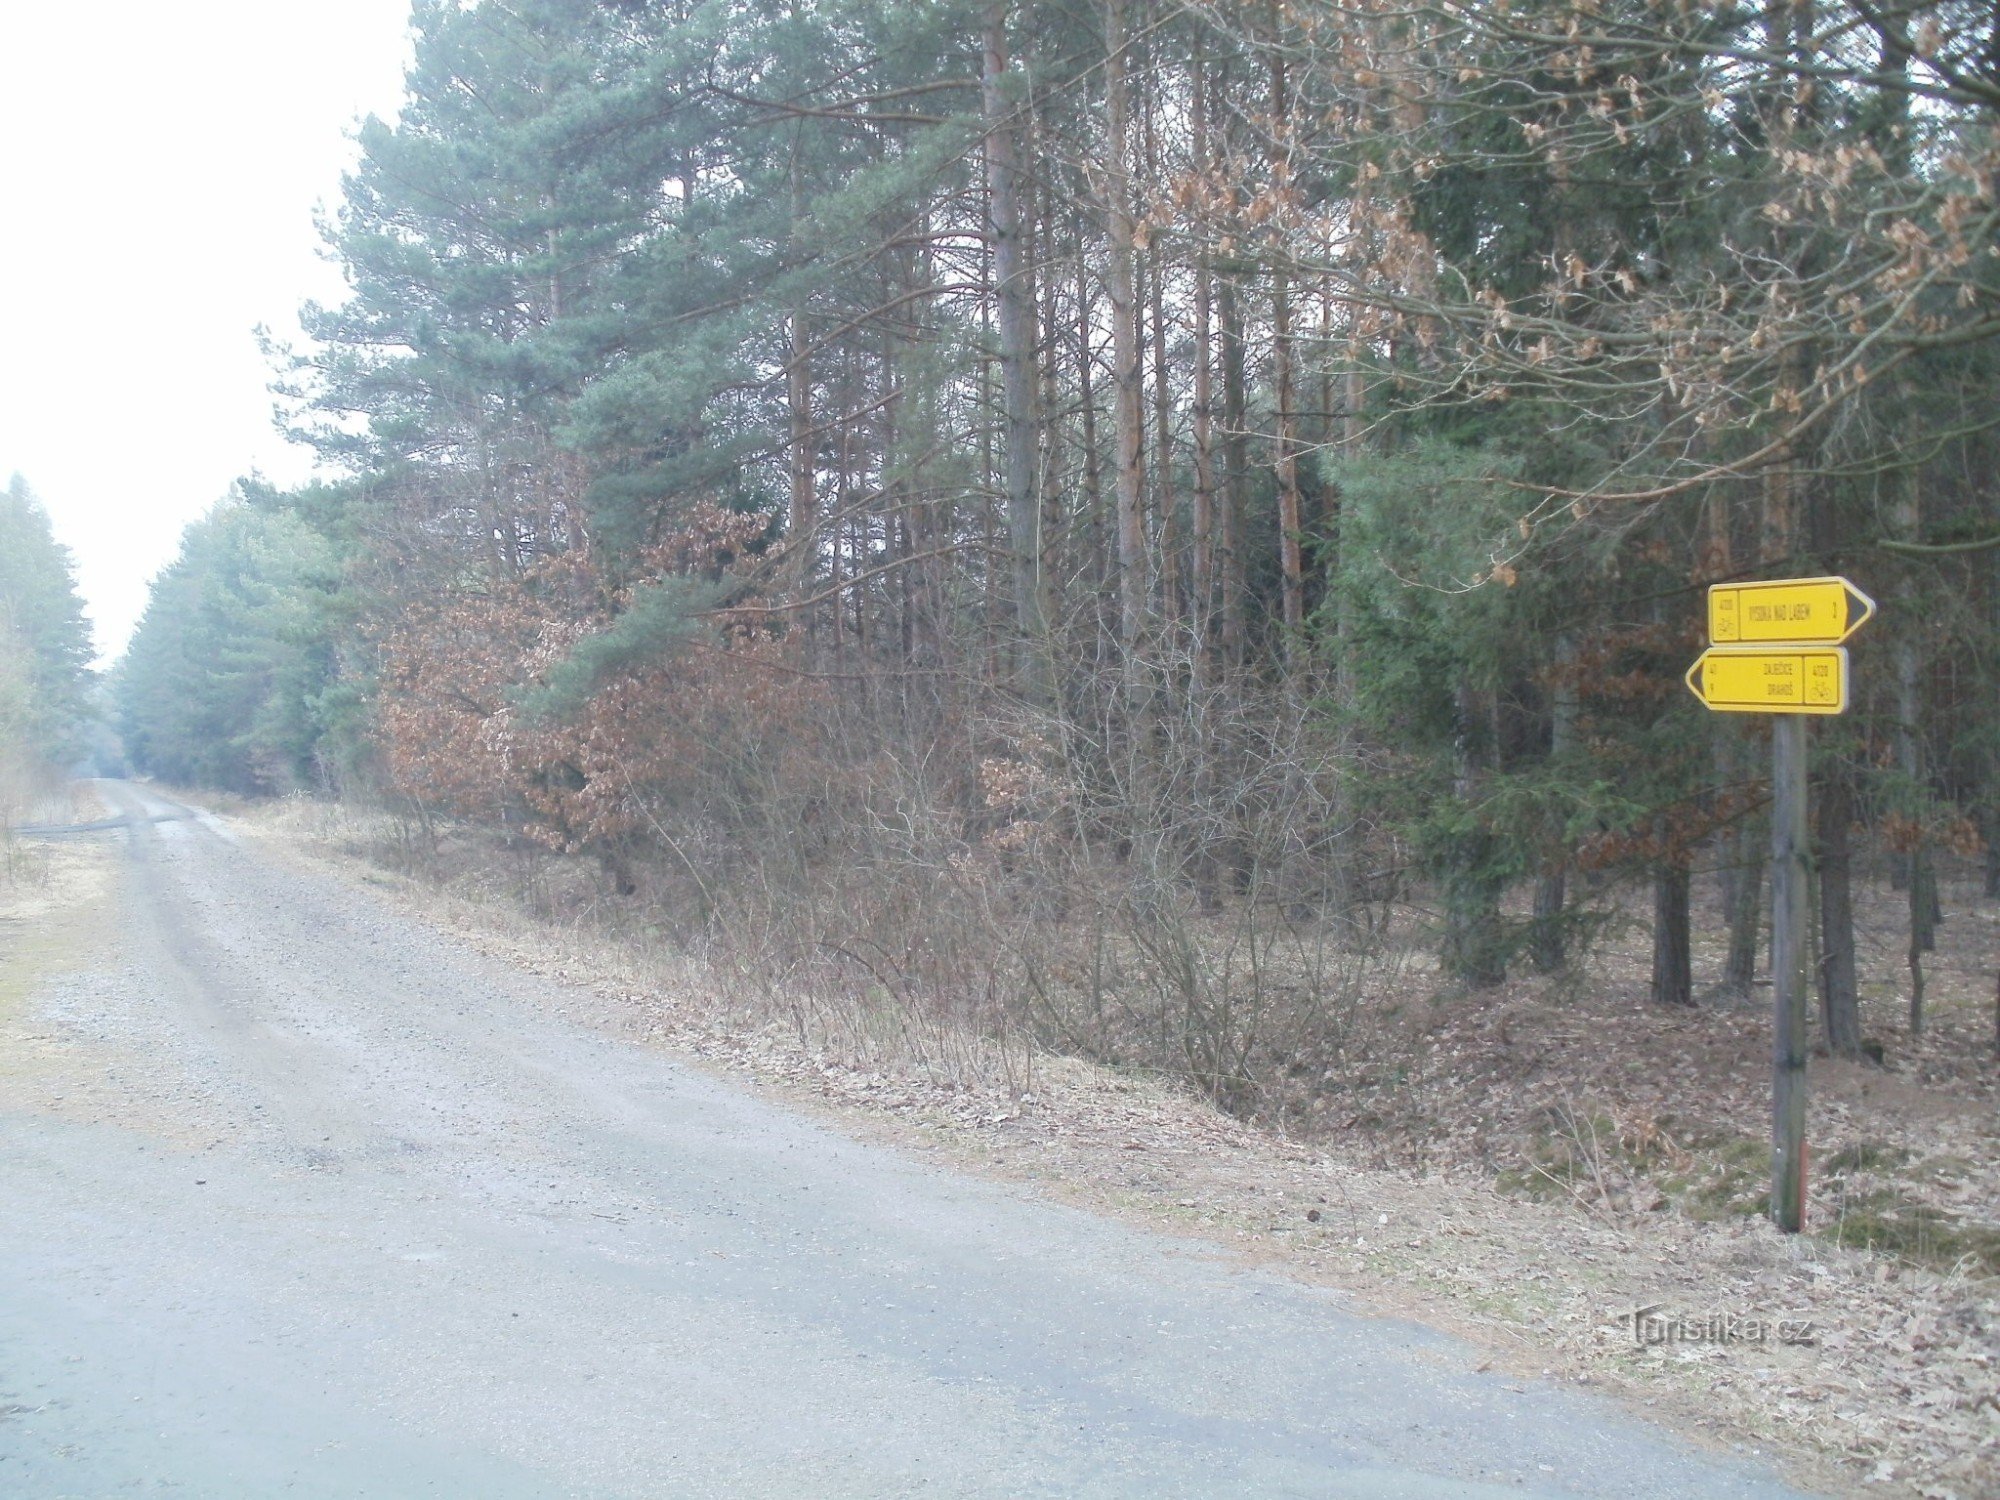 răscruce de drumuri cu bicicleta în pădurea Vysoké nad Labem